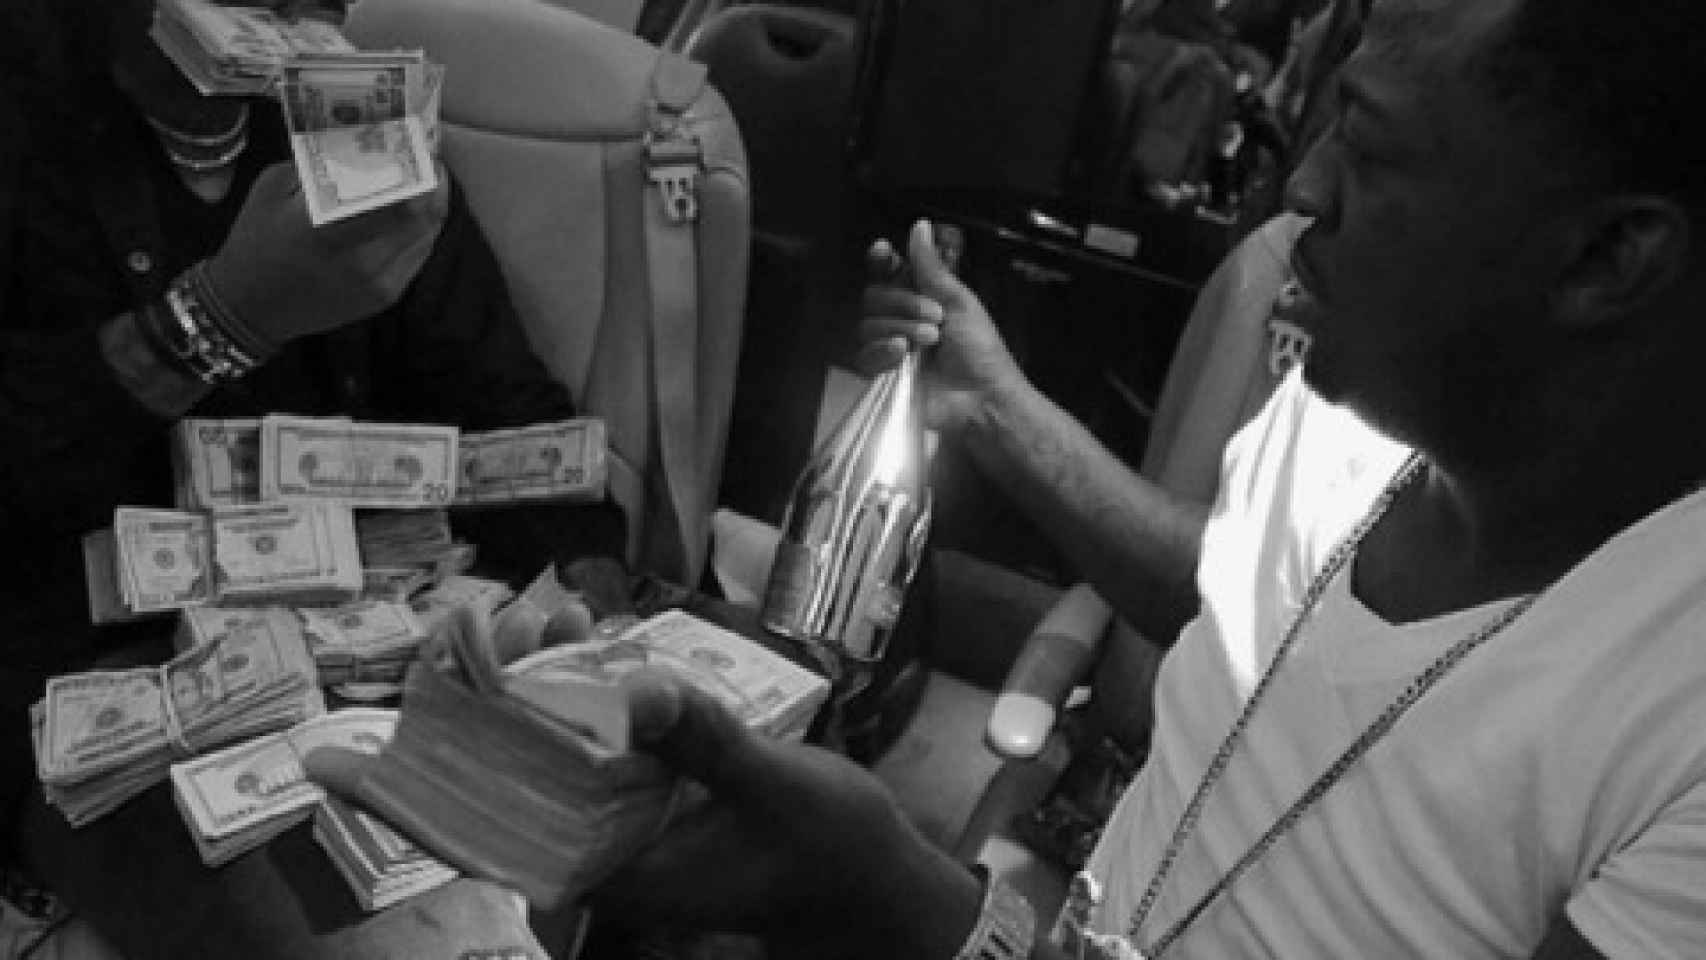 El rapero Future se divierte en su jet privado con champagne y billetes